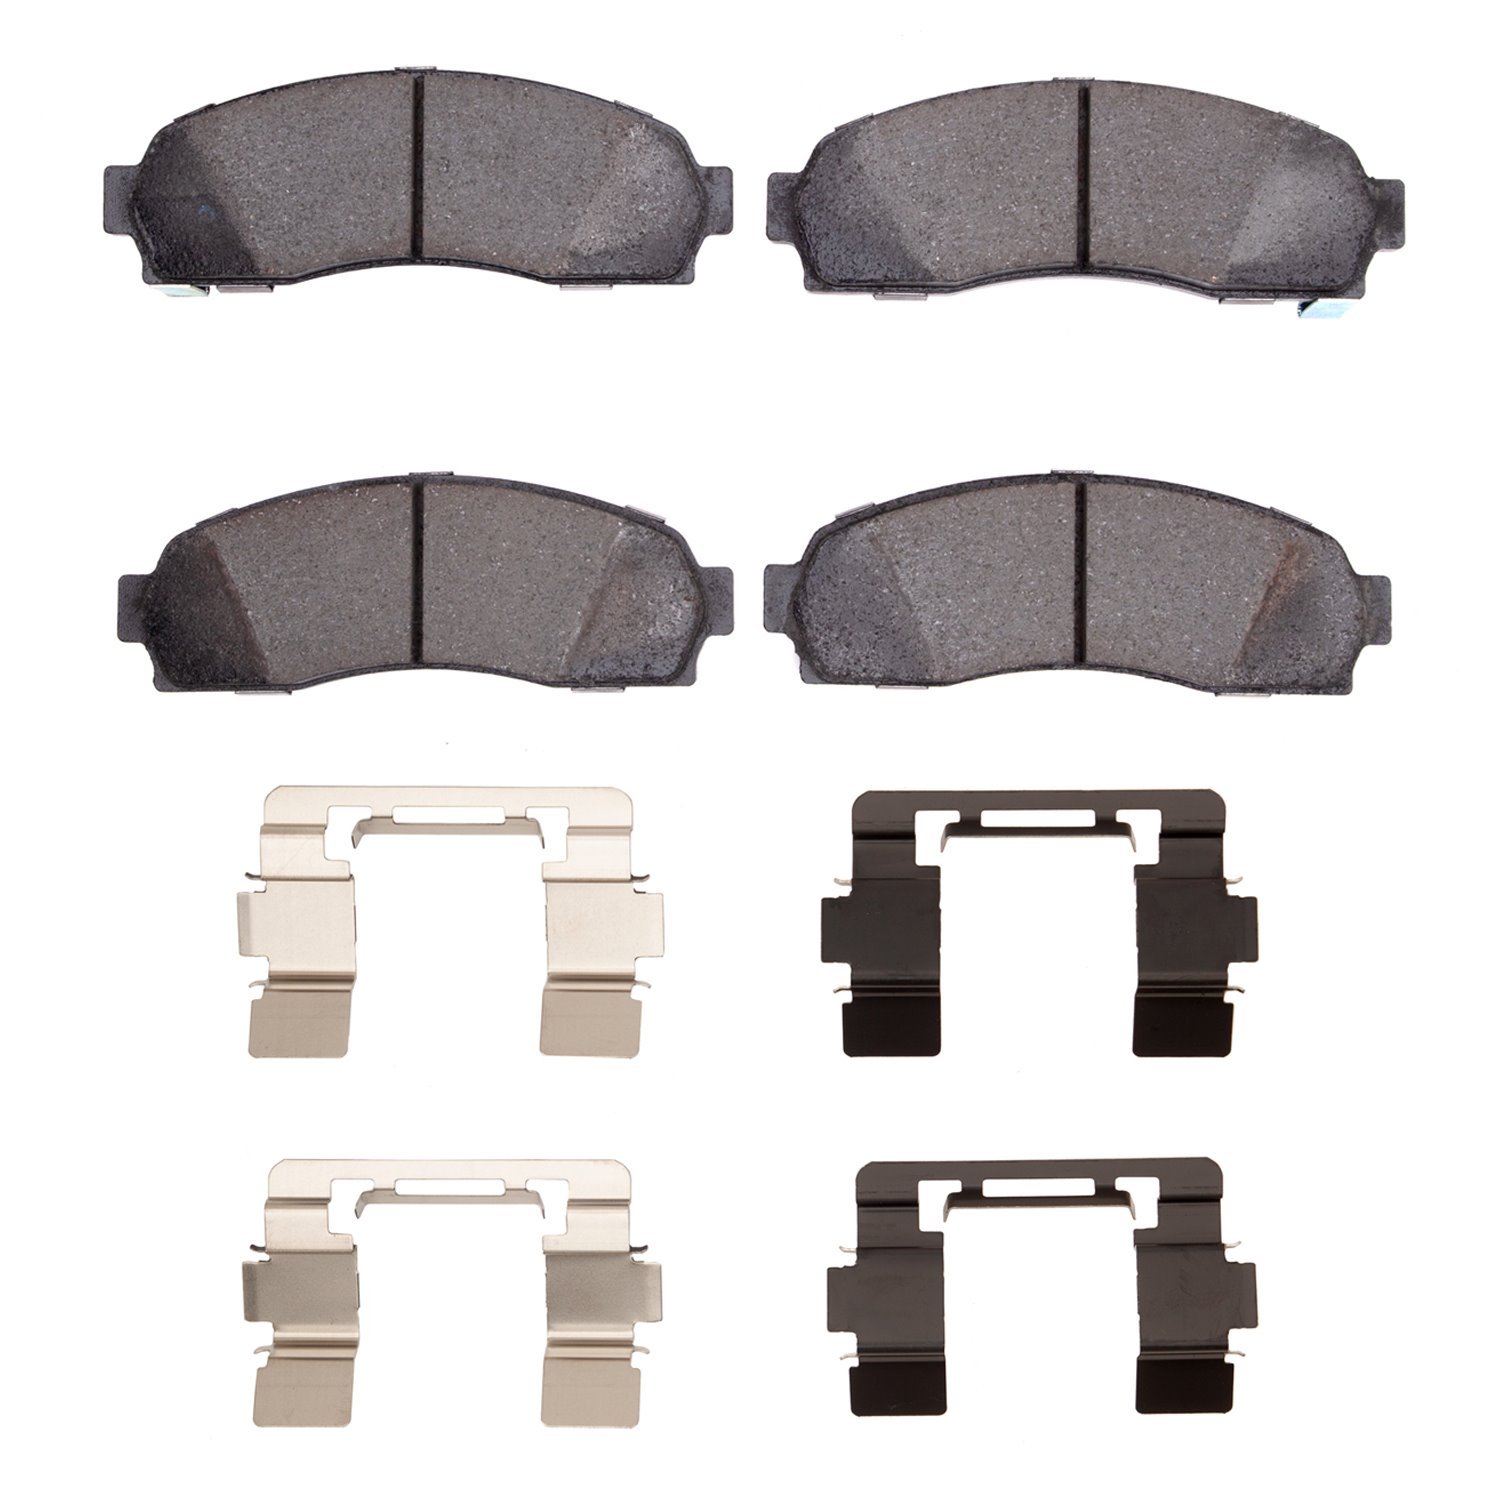 Super-Duty Brake Pads & Hardware Kit, 2002-2012 Fits Multiple Makes/Models, Position: Front